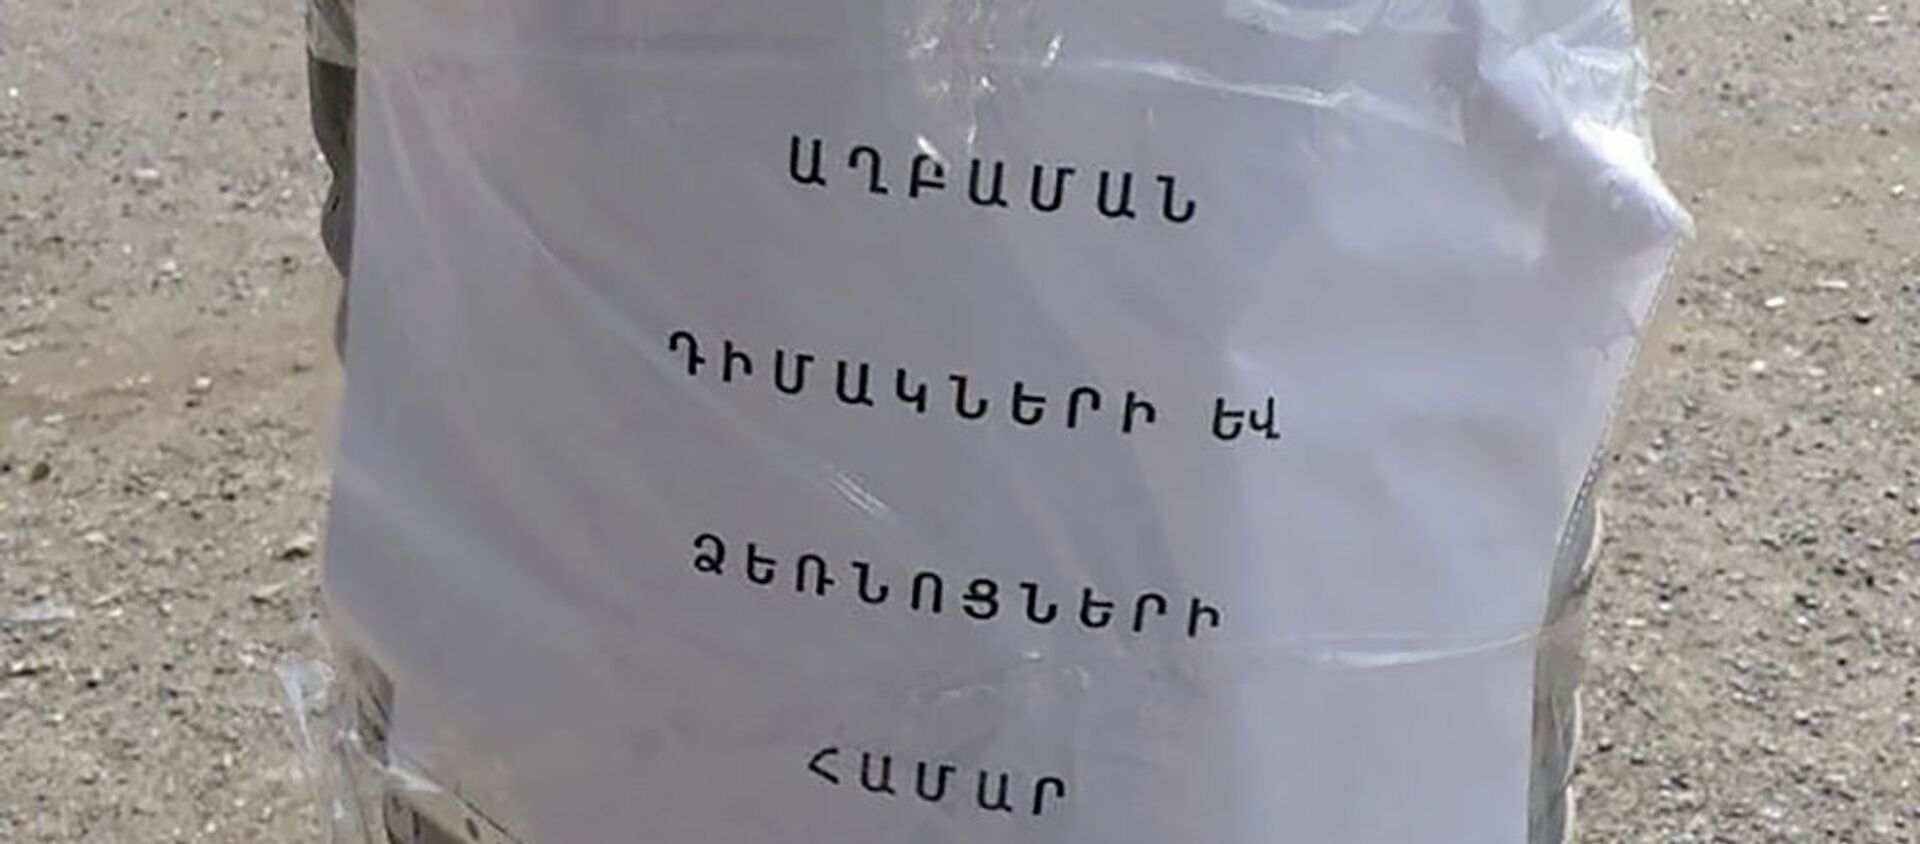 Мусорный контейнер для медицинских масок и перчаток около Национального центра пульмонологии - Sputnik Армения, 1920, 11.07.2020